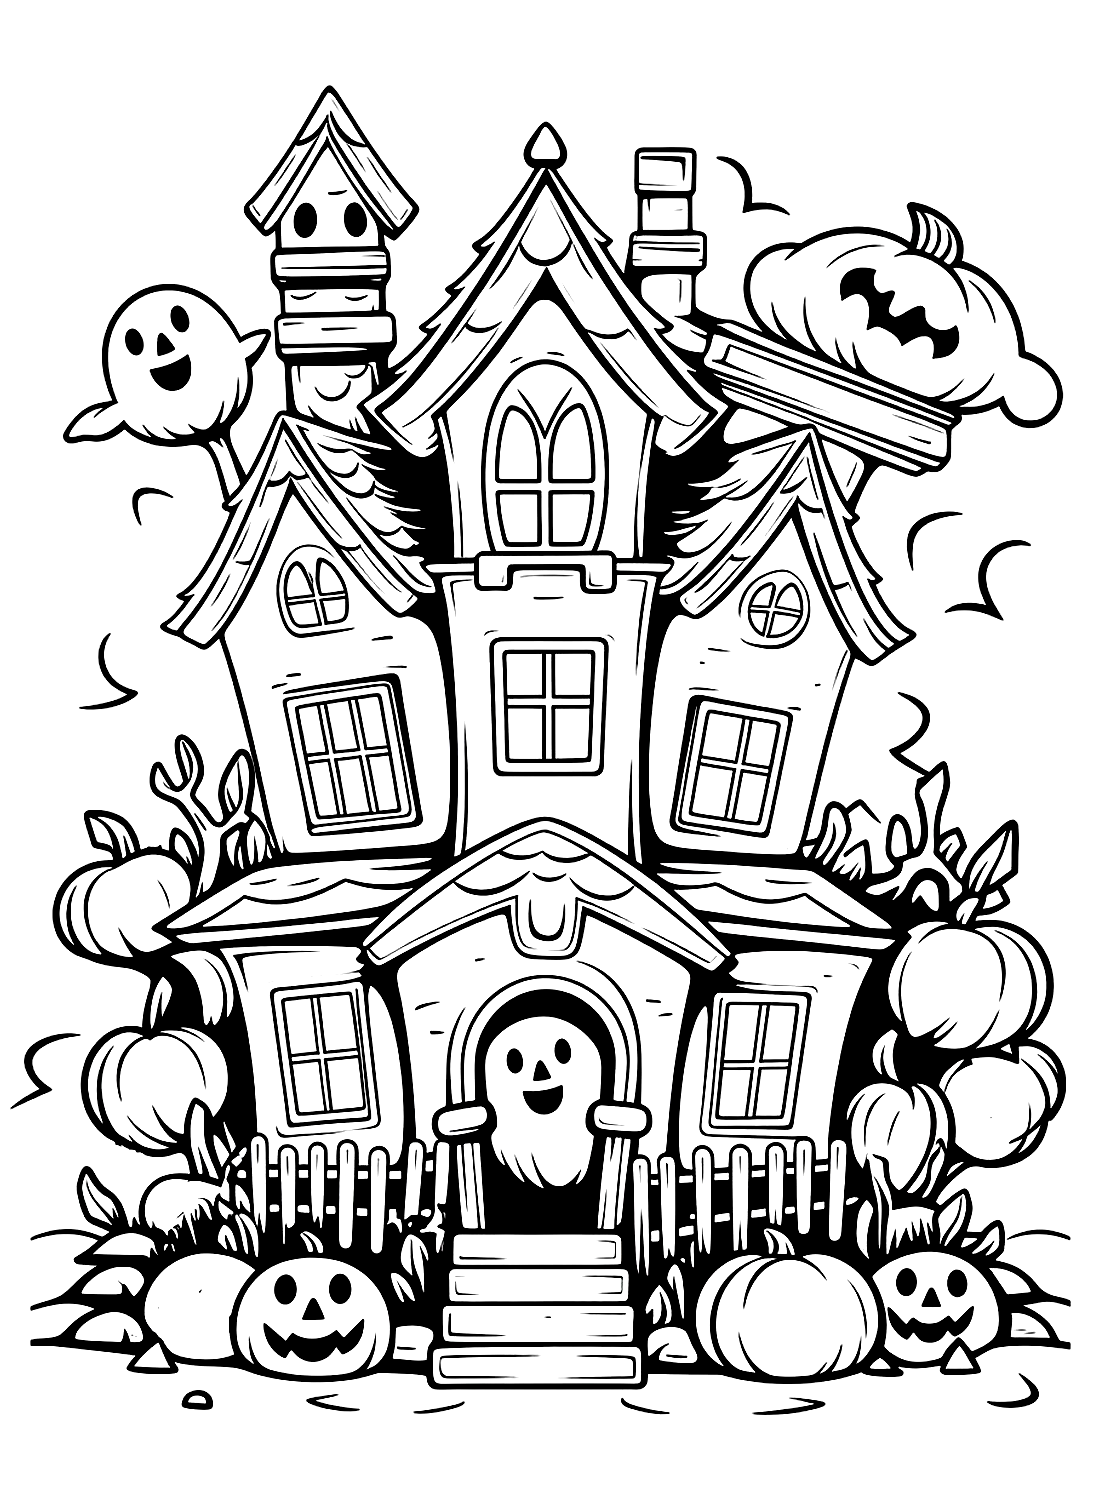 Páginas para colorear de Halloween de la casa encantada de Haunted House